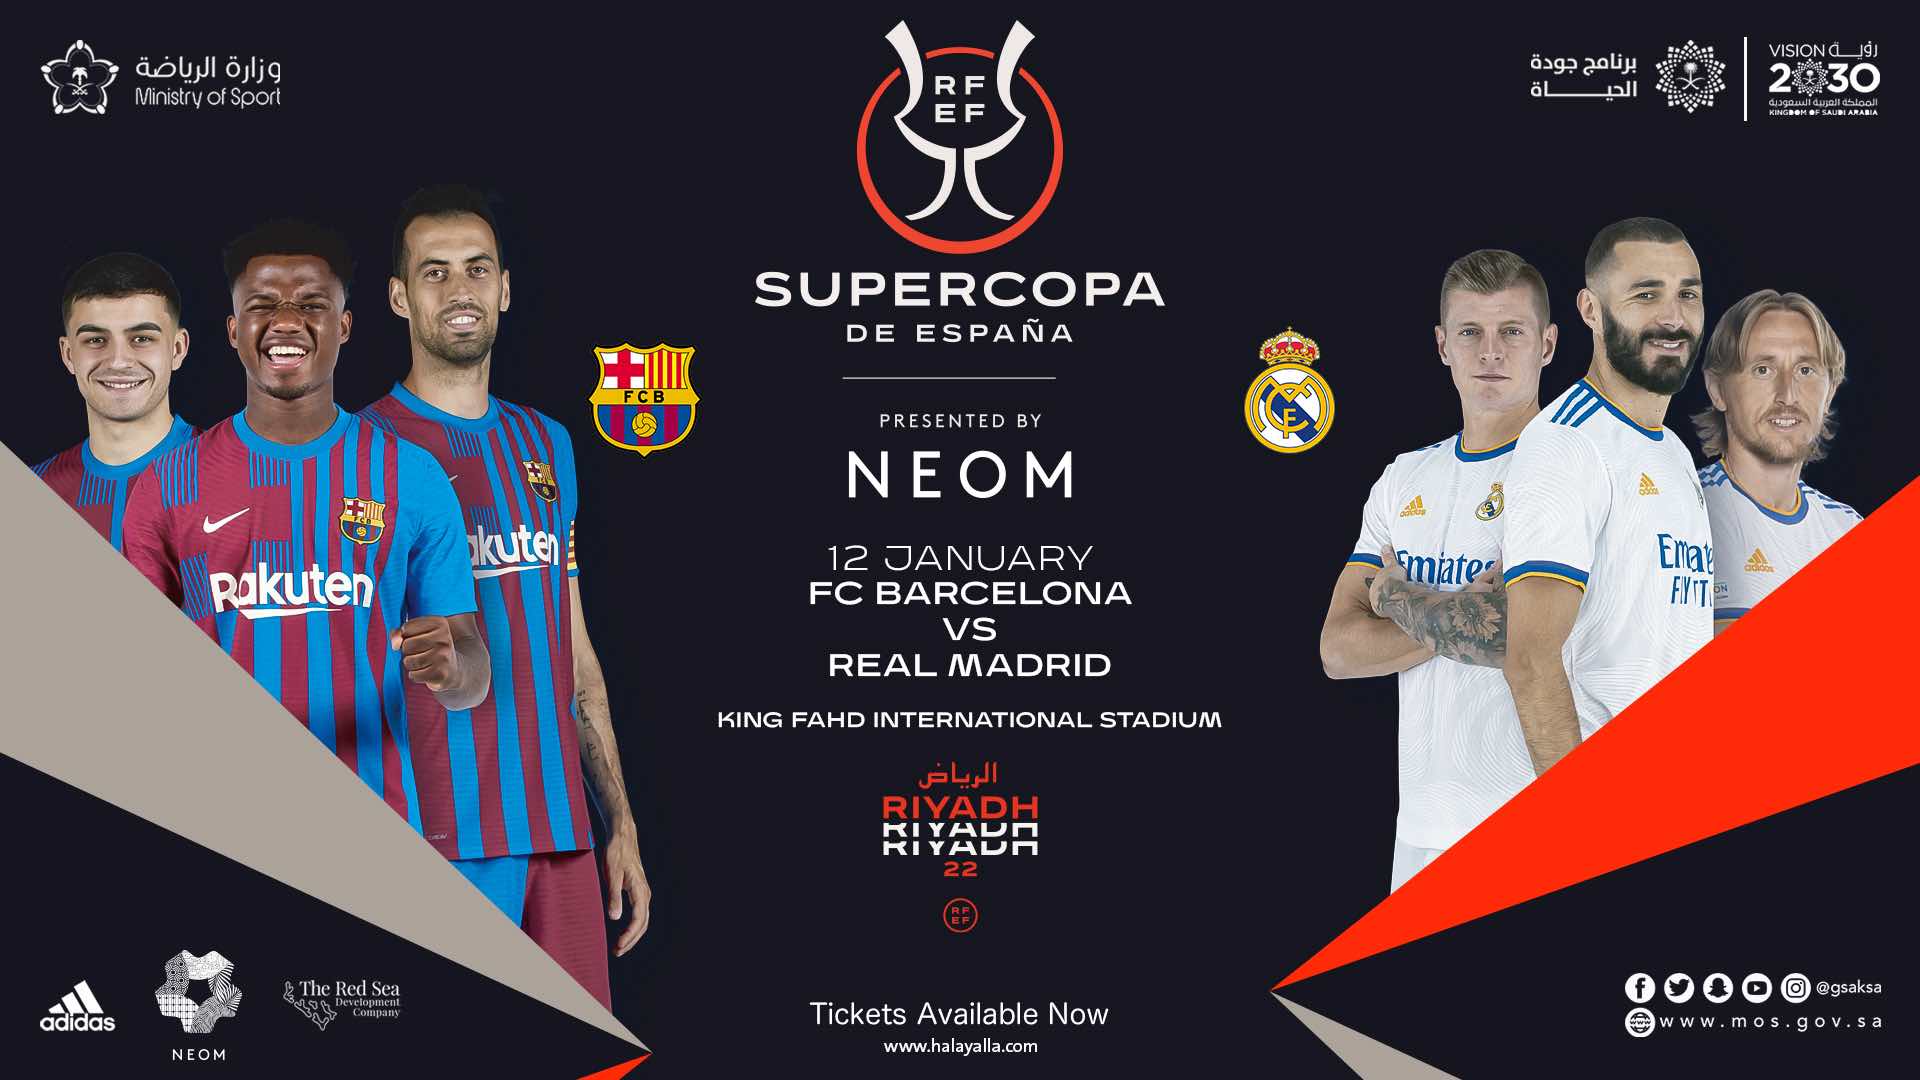 supercopa-de-espana-2022-real-madrid-cf-vs-fc-barcelona-event-poster